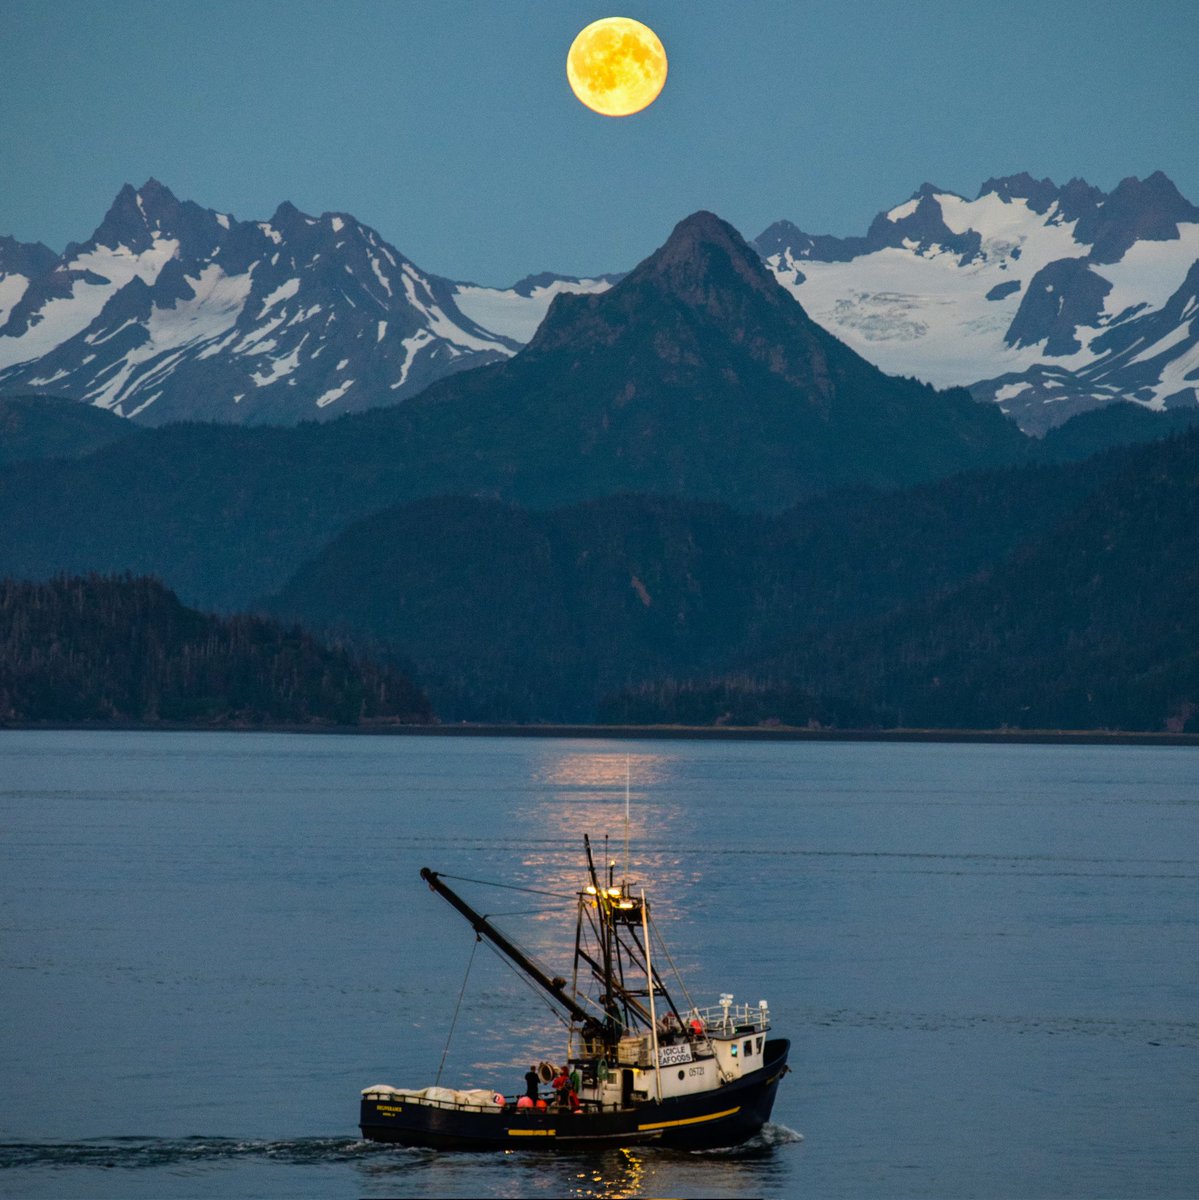 Full Moon on Kachemak Bay, Alaska! #experienceit #travel #fullmoon #Alaska #adventure #luxurylodge #summervacation #alaskaresort #virtuoso #kachemakbay #luxurytravel #cabins #amazingplaces #stillpointlodge